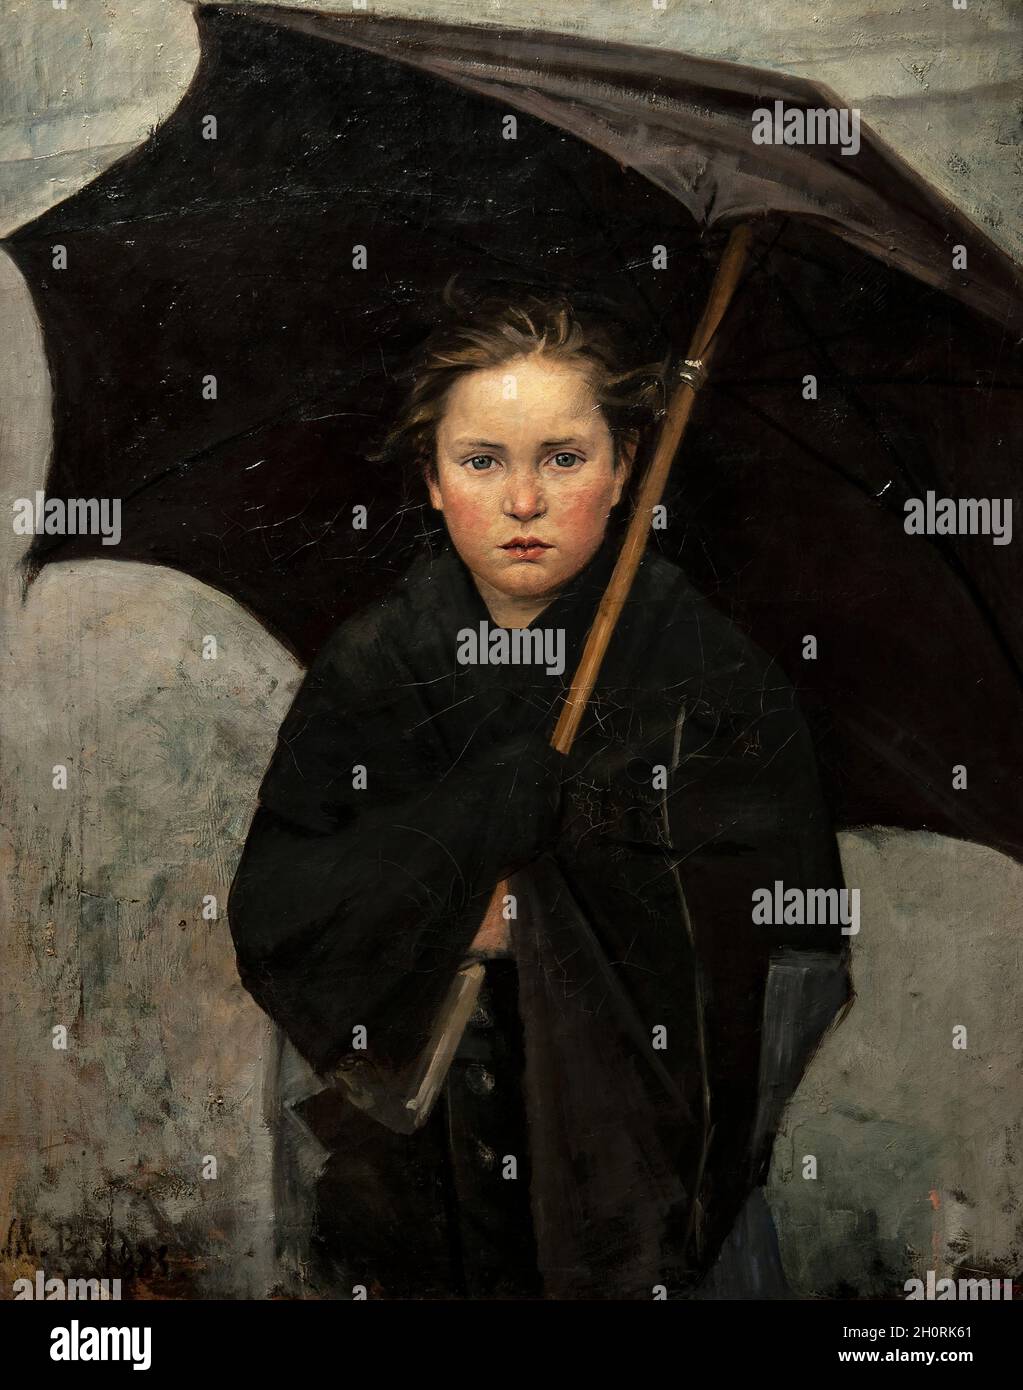 Kunst, Russische Kunst, Marija Kostantinovna Bashkirtseva, 1860 - 1884, Titel der Arbeit, Regenschirm, 1883, Öl auf Leinwand, cm 93 x 74. Stockfoto